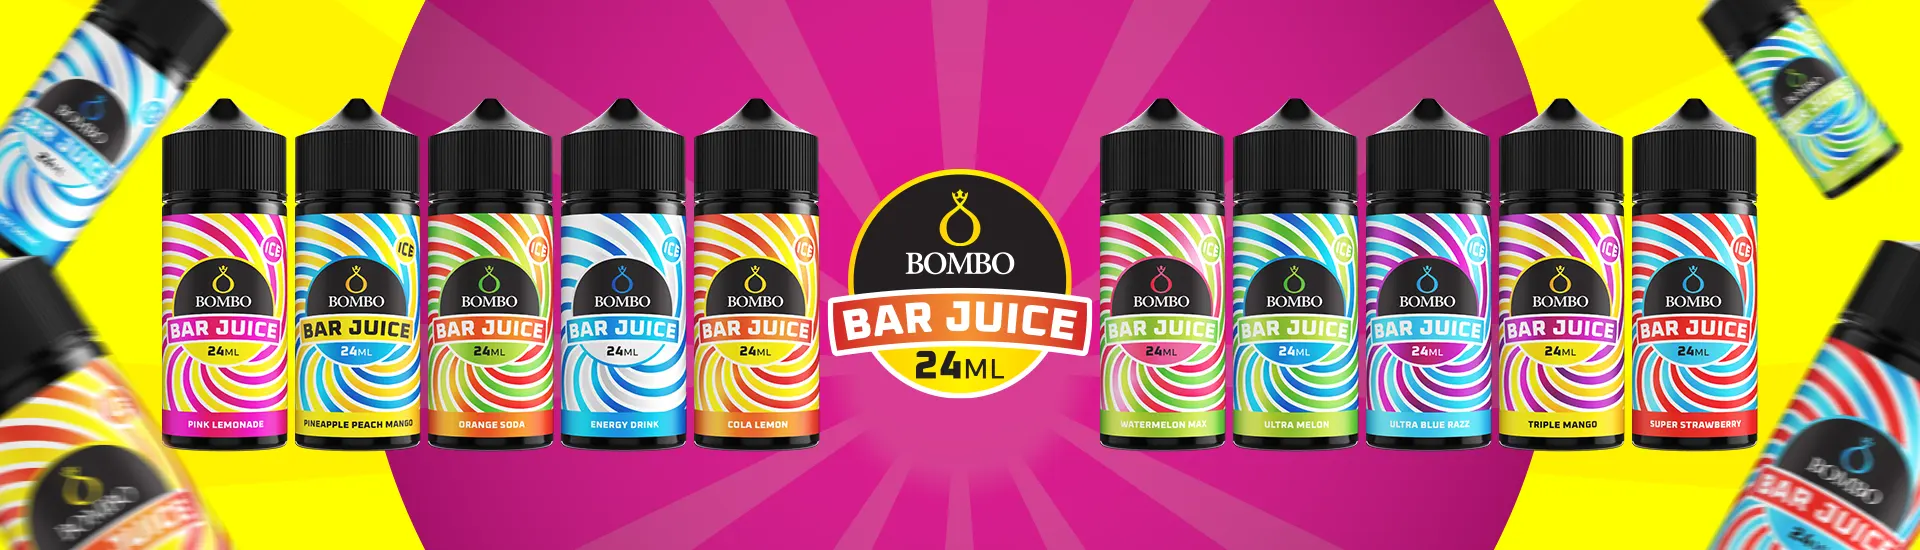 banner-bombo-bar-juice